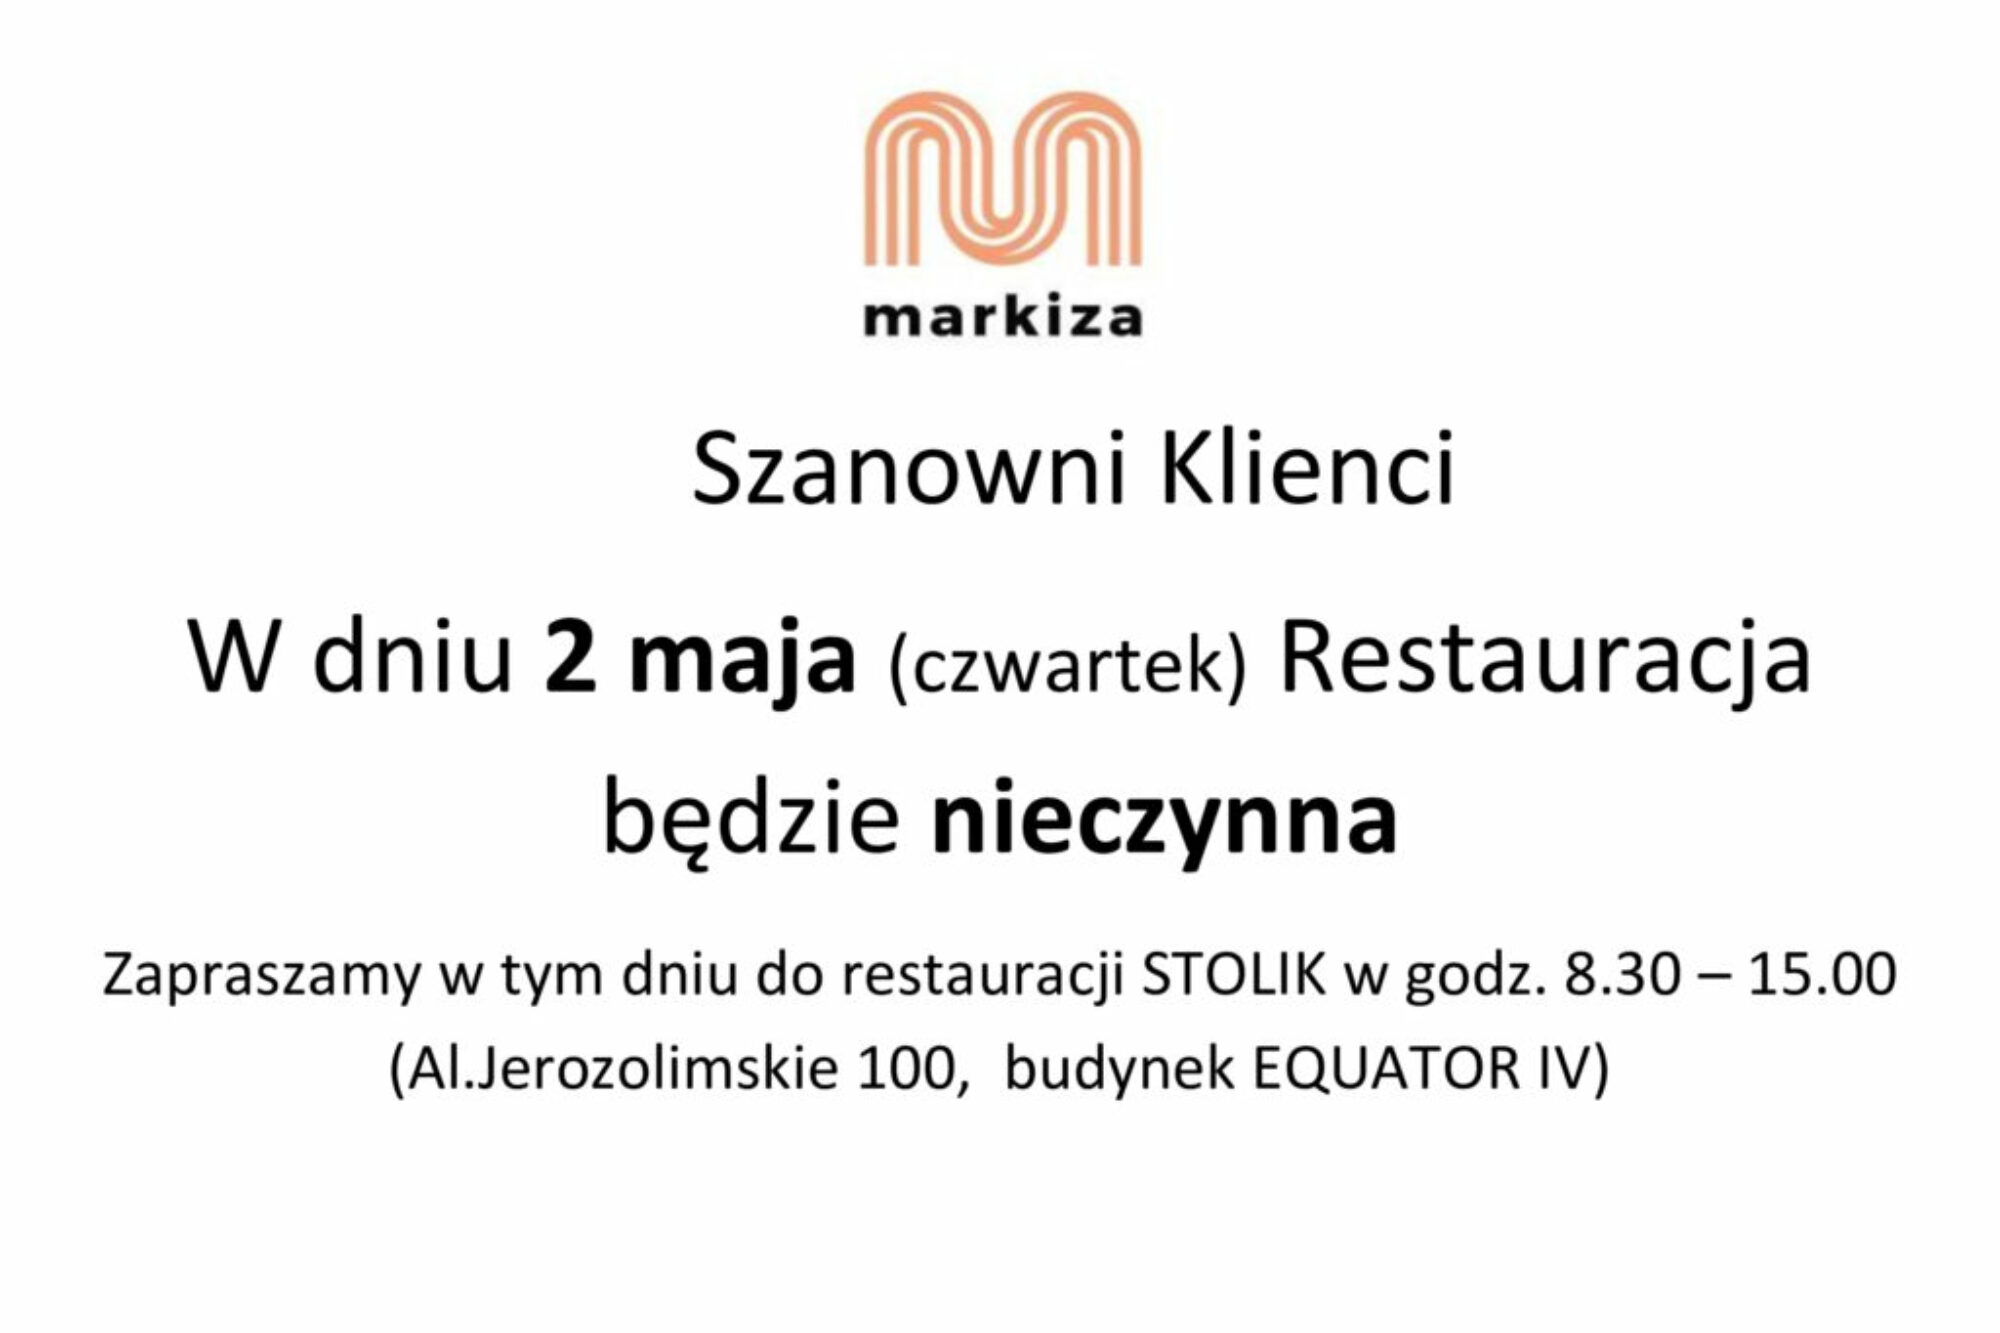 restauracja-nieczynna-_drzwi-Markiza_-2-maja